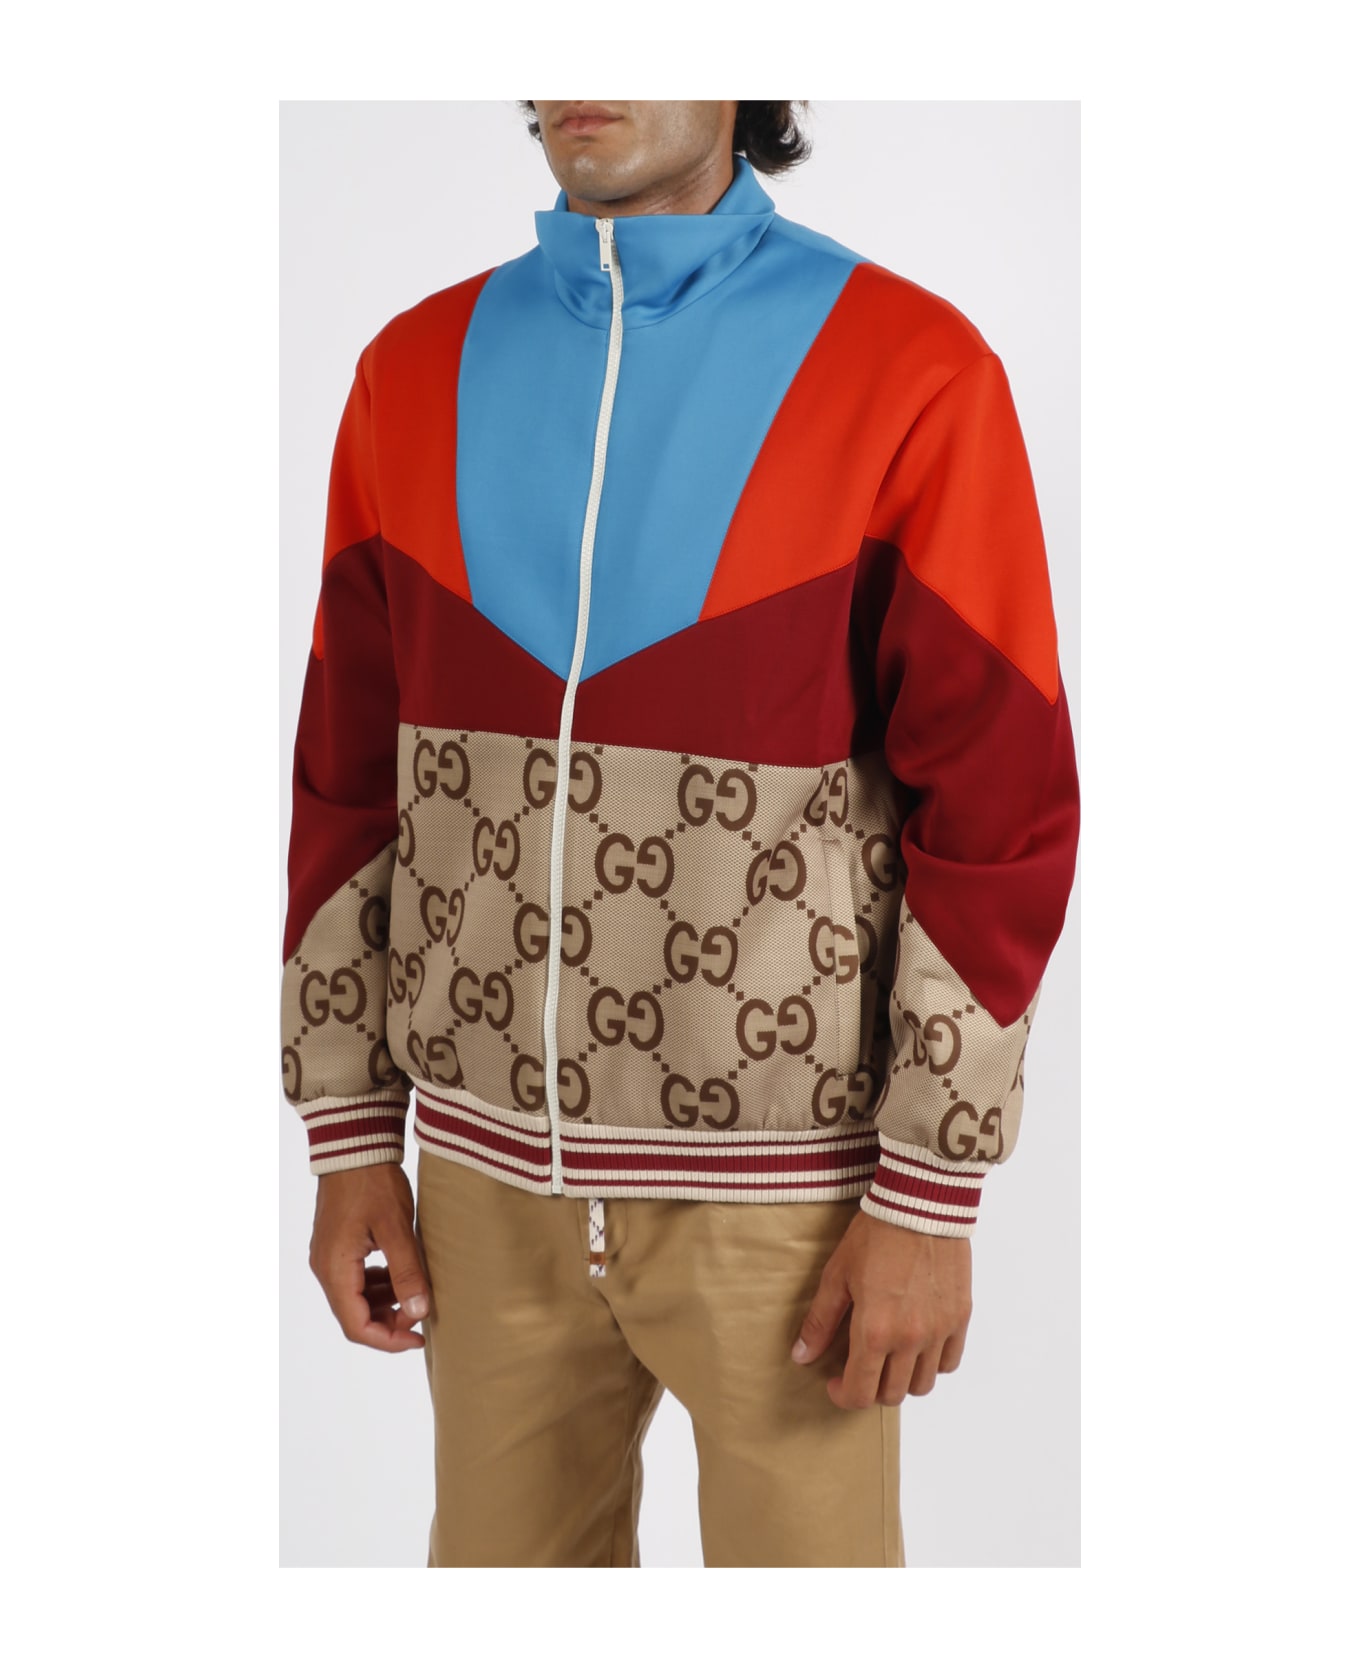 Gucci Lightweight Neoprene Zip Jacket - Beige/Ebano